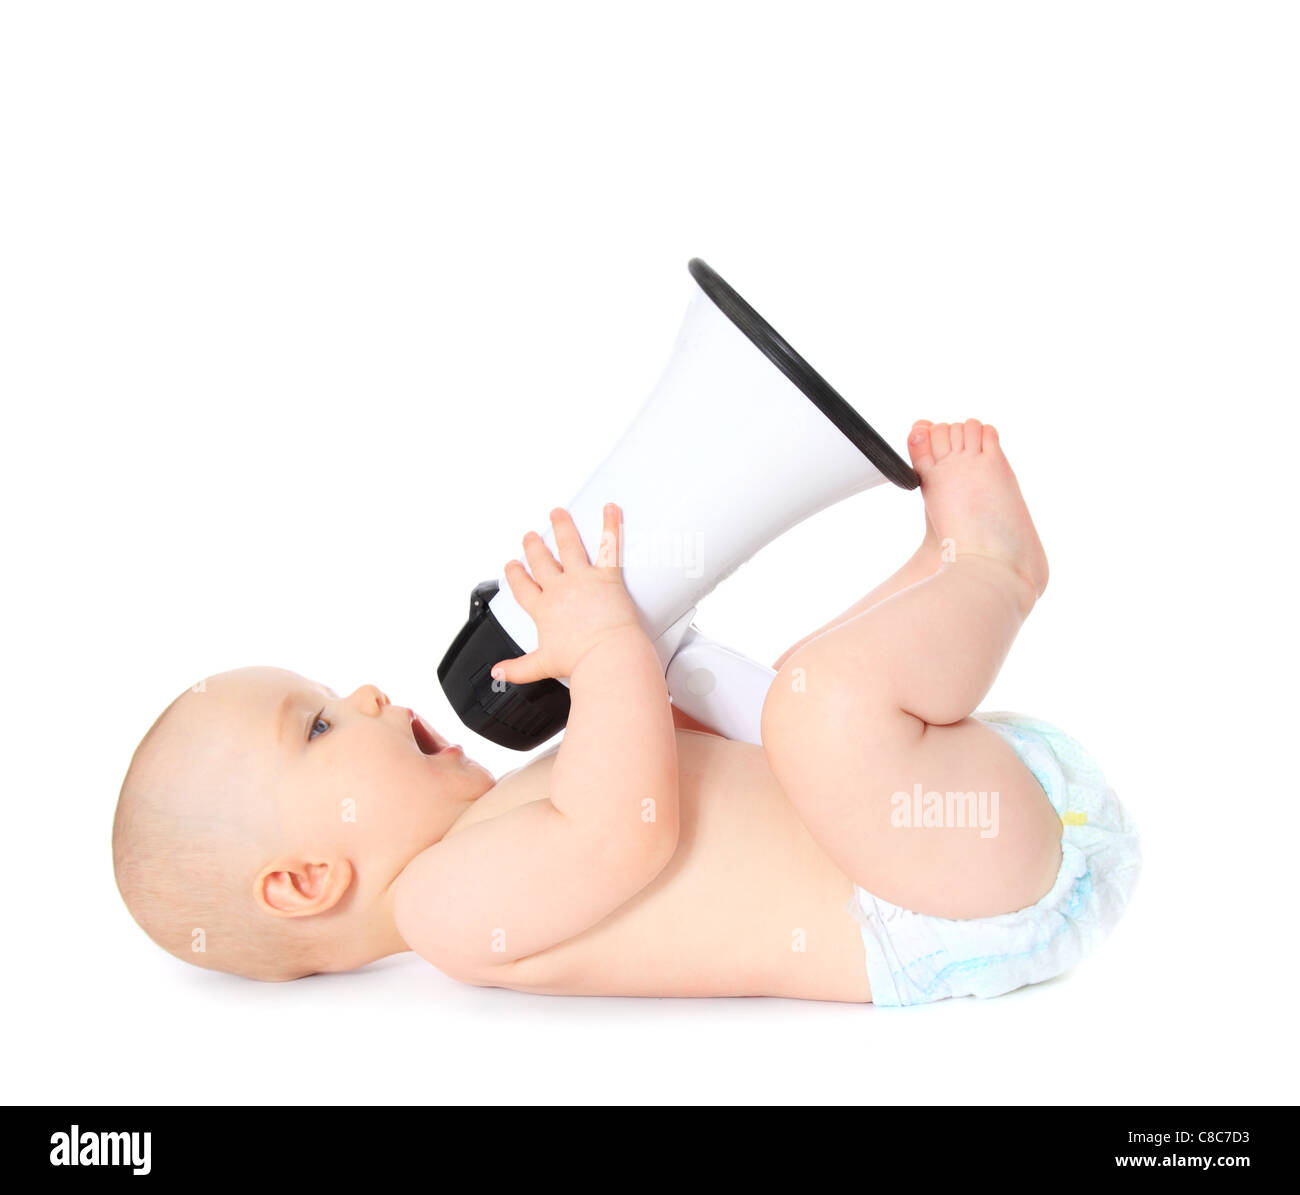 Carino baby giocando con il megafono. Tutto su sfondo bianco. Foto Stock